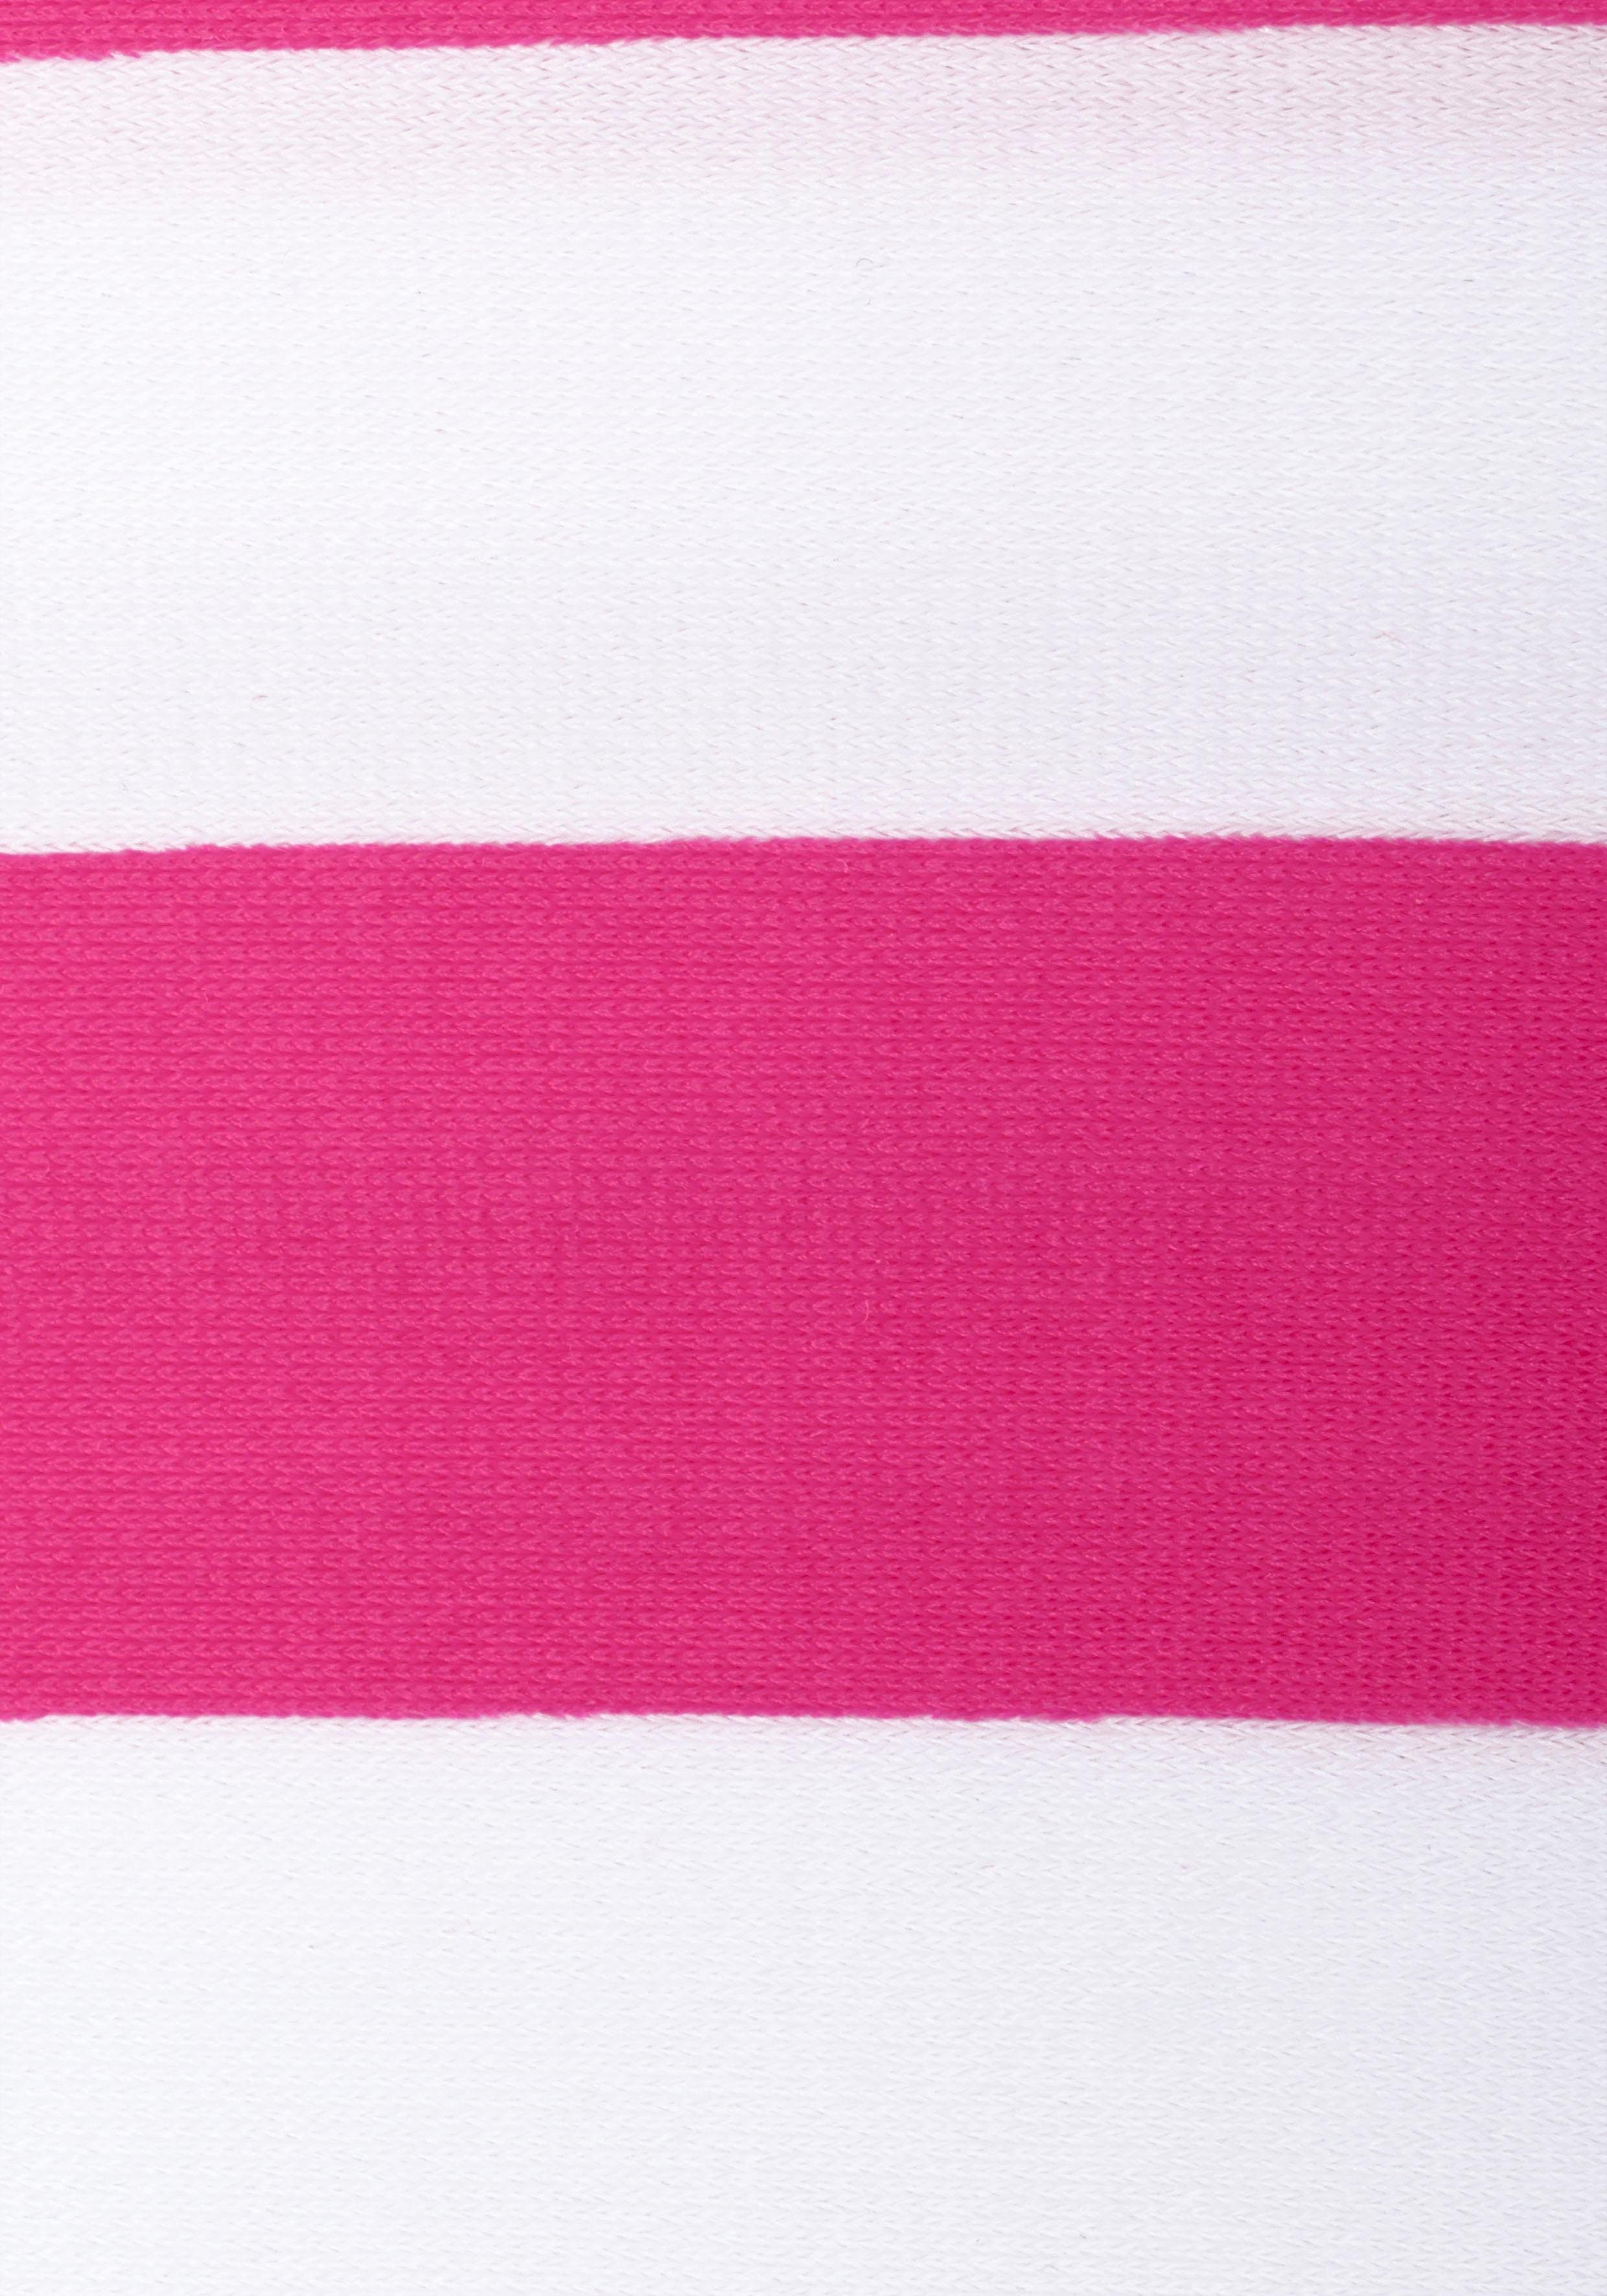 Bandeau-Bikini Bench. mit pink-weiß trendigen Streifen